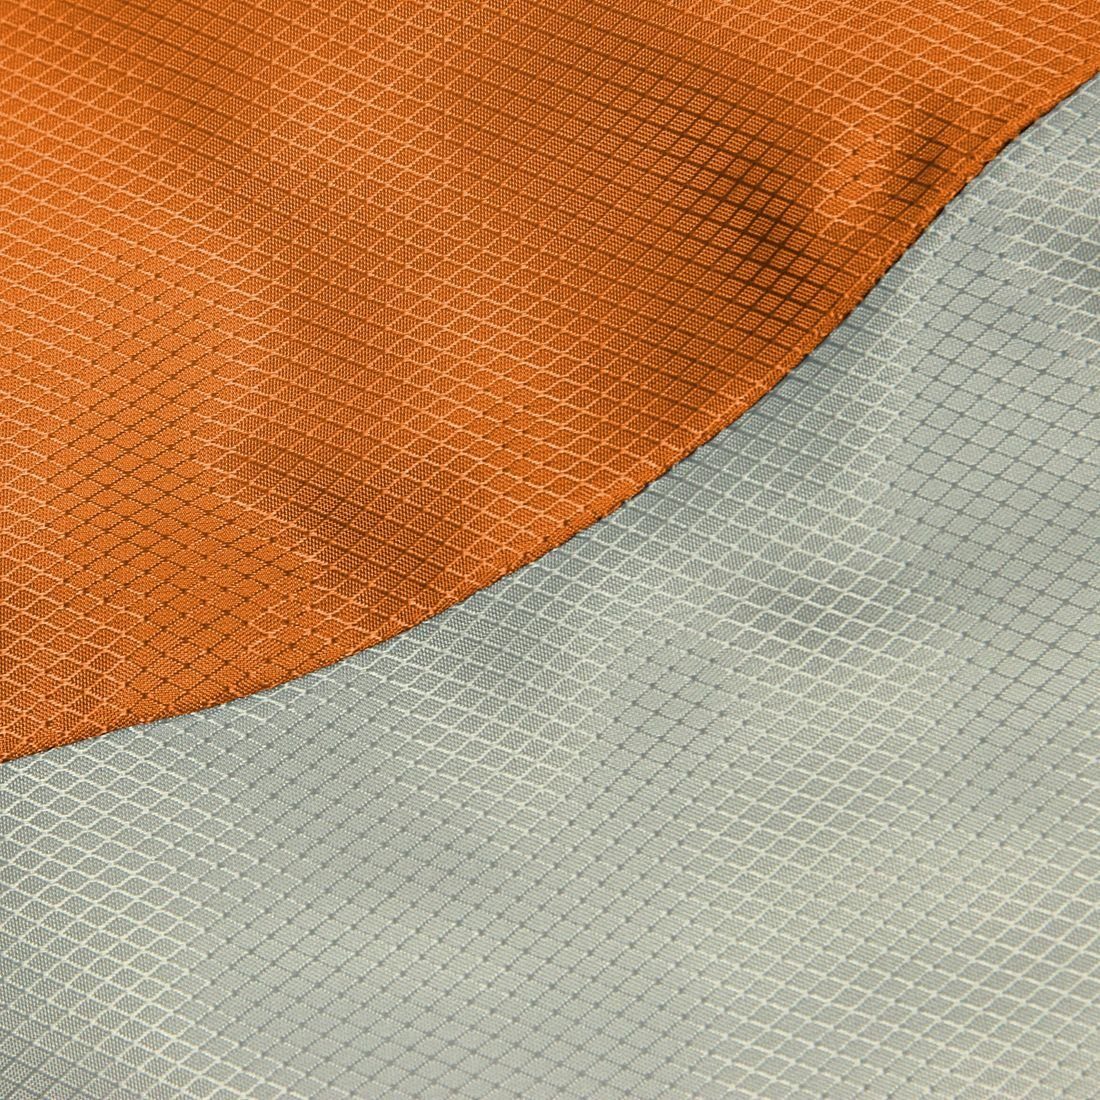 FRIDANI Deckenschlafsack waschbar warm Orange Kinderschlafsack QO 170x70 Deckenschlafsack